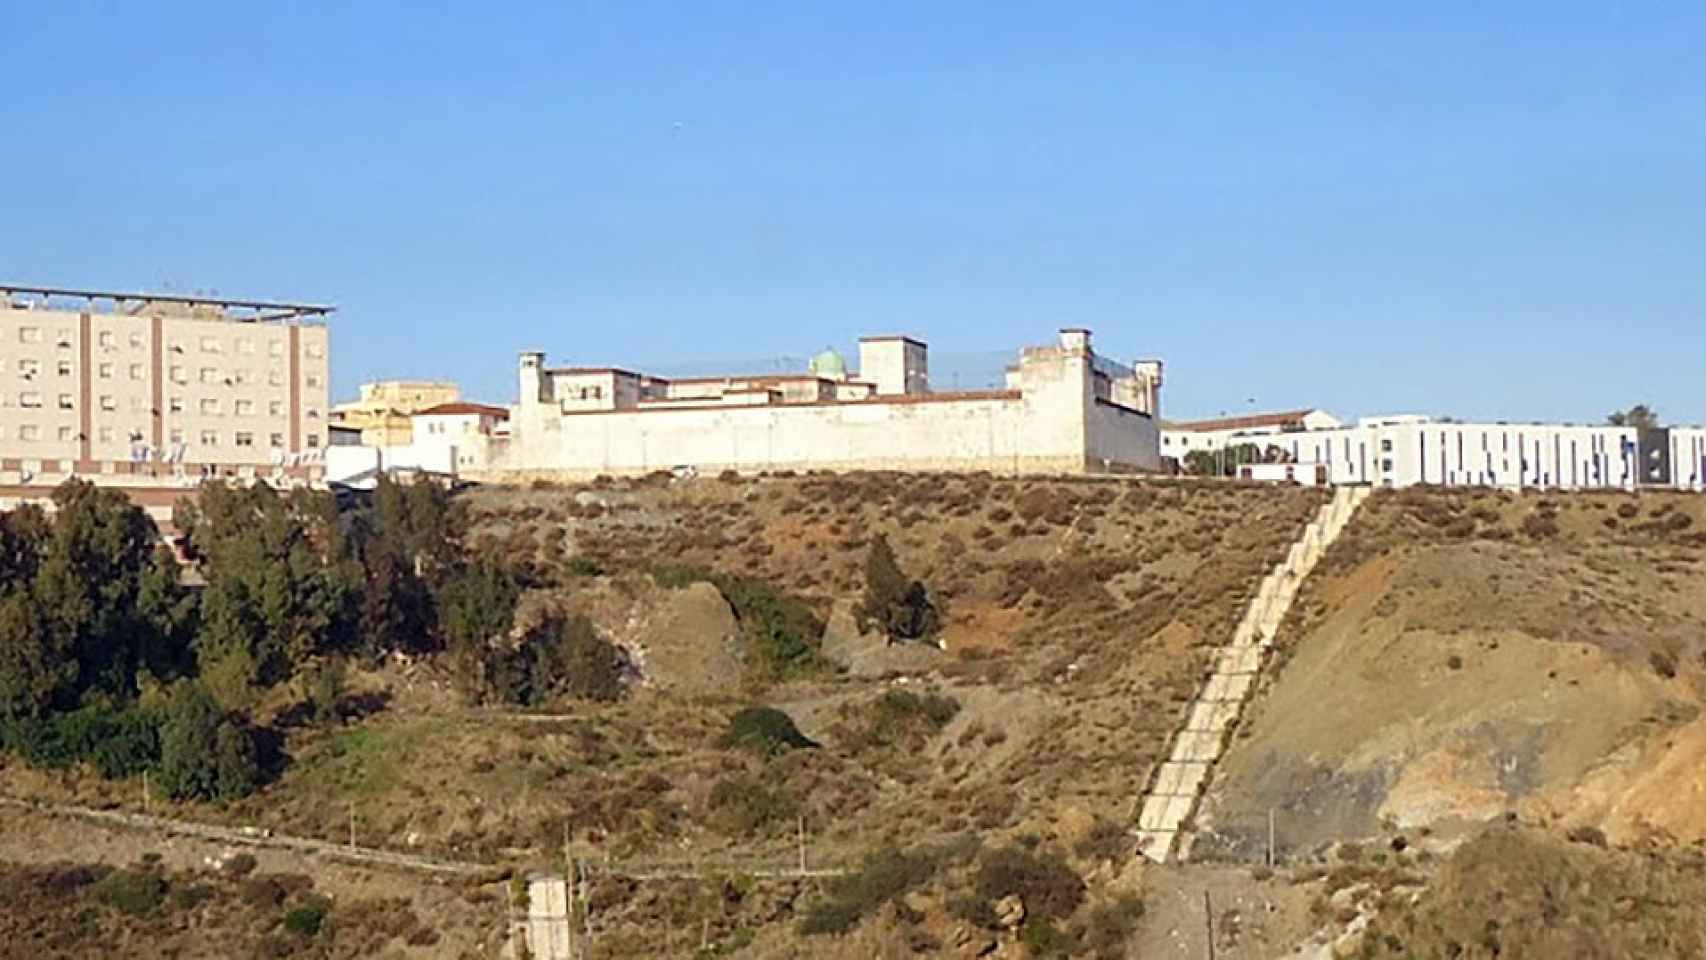 Vista panorámica de la antigua prisión de Los Rosales en Ceuta.